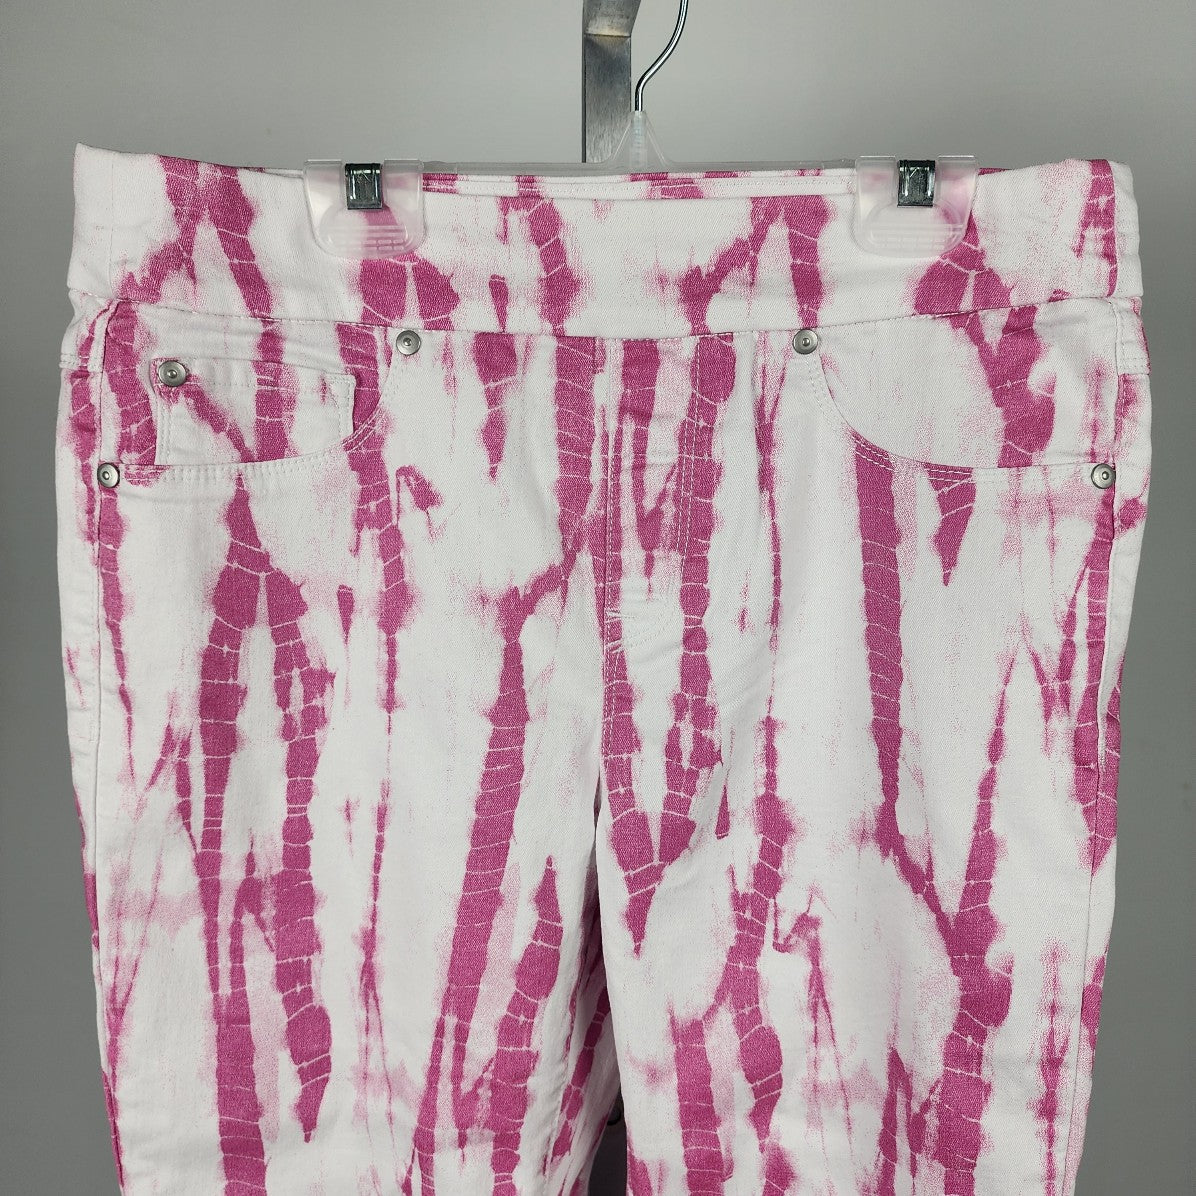 Tribal Jeans Tie Dye Pink & White Cropped Capri Pants Size 8